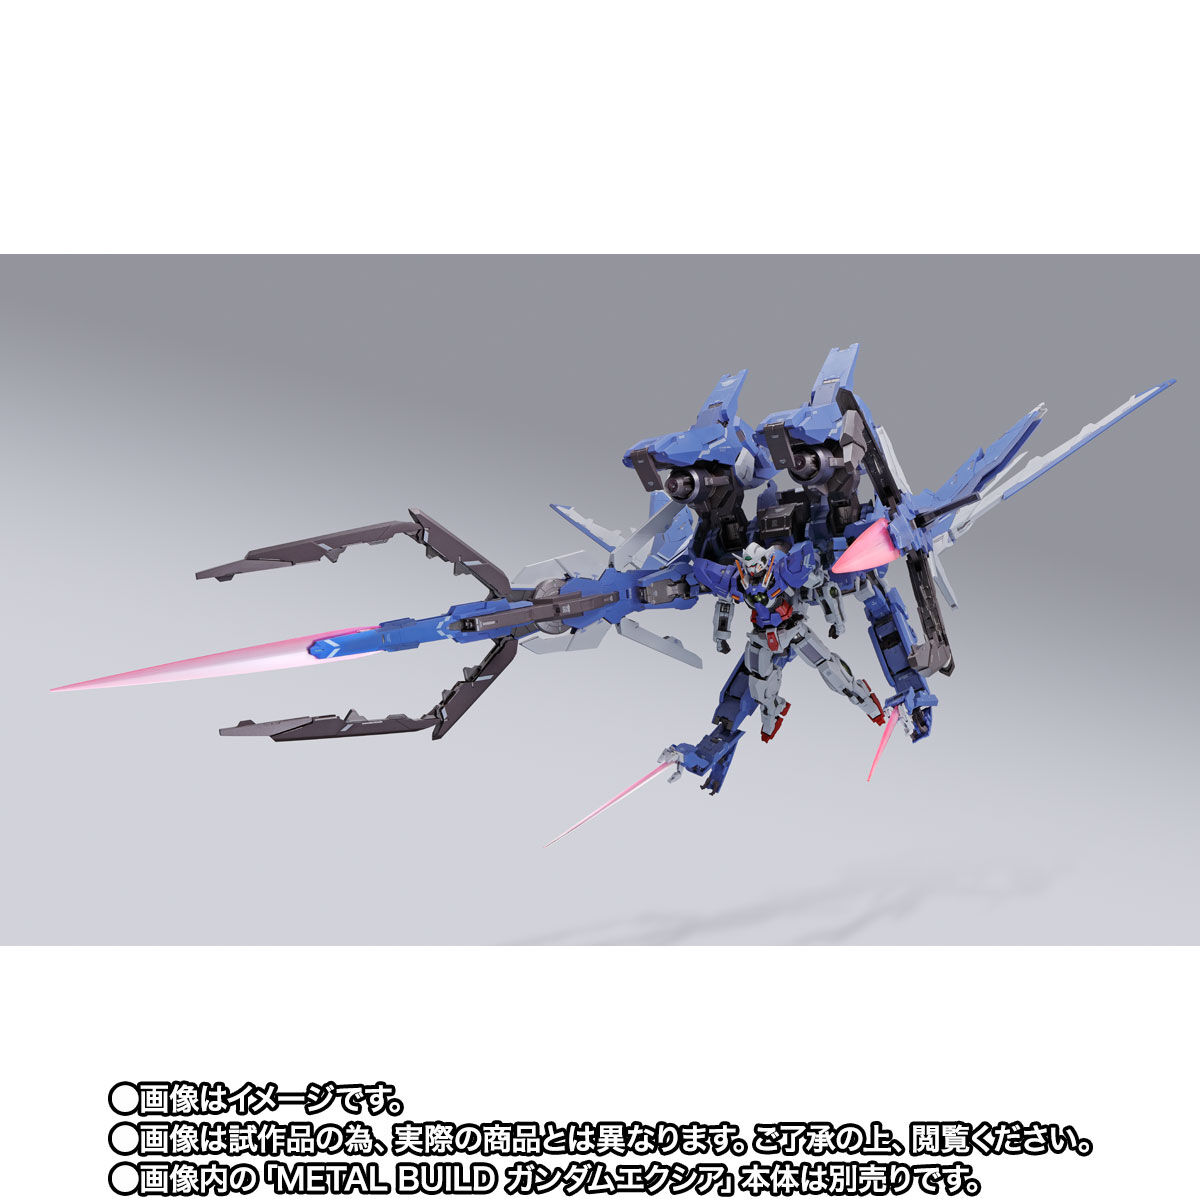 【限定販売】METAL BUILD『GNアームズ TYPE-E』 機動戦士ガンダム00 可動フィギュア-005